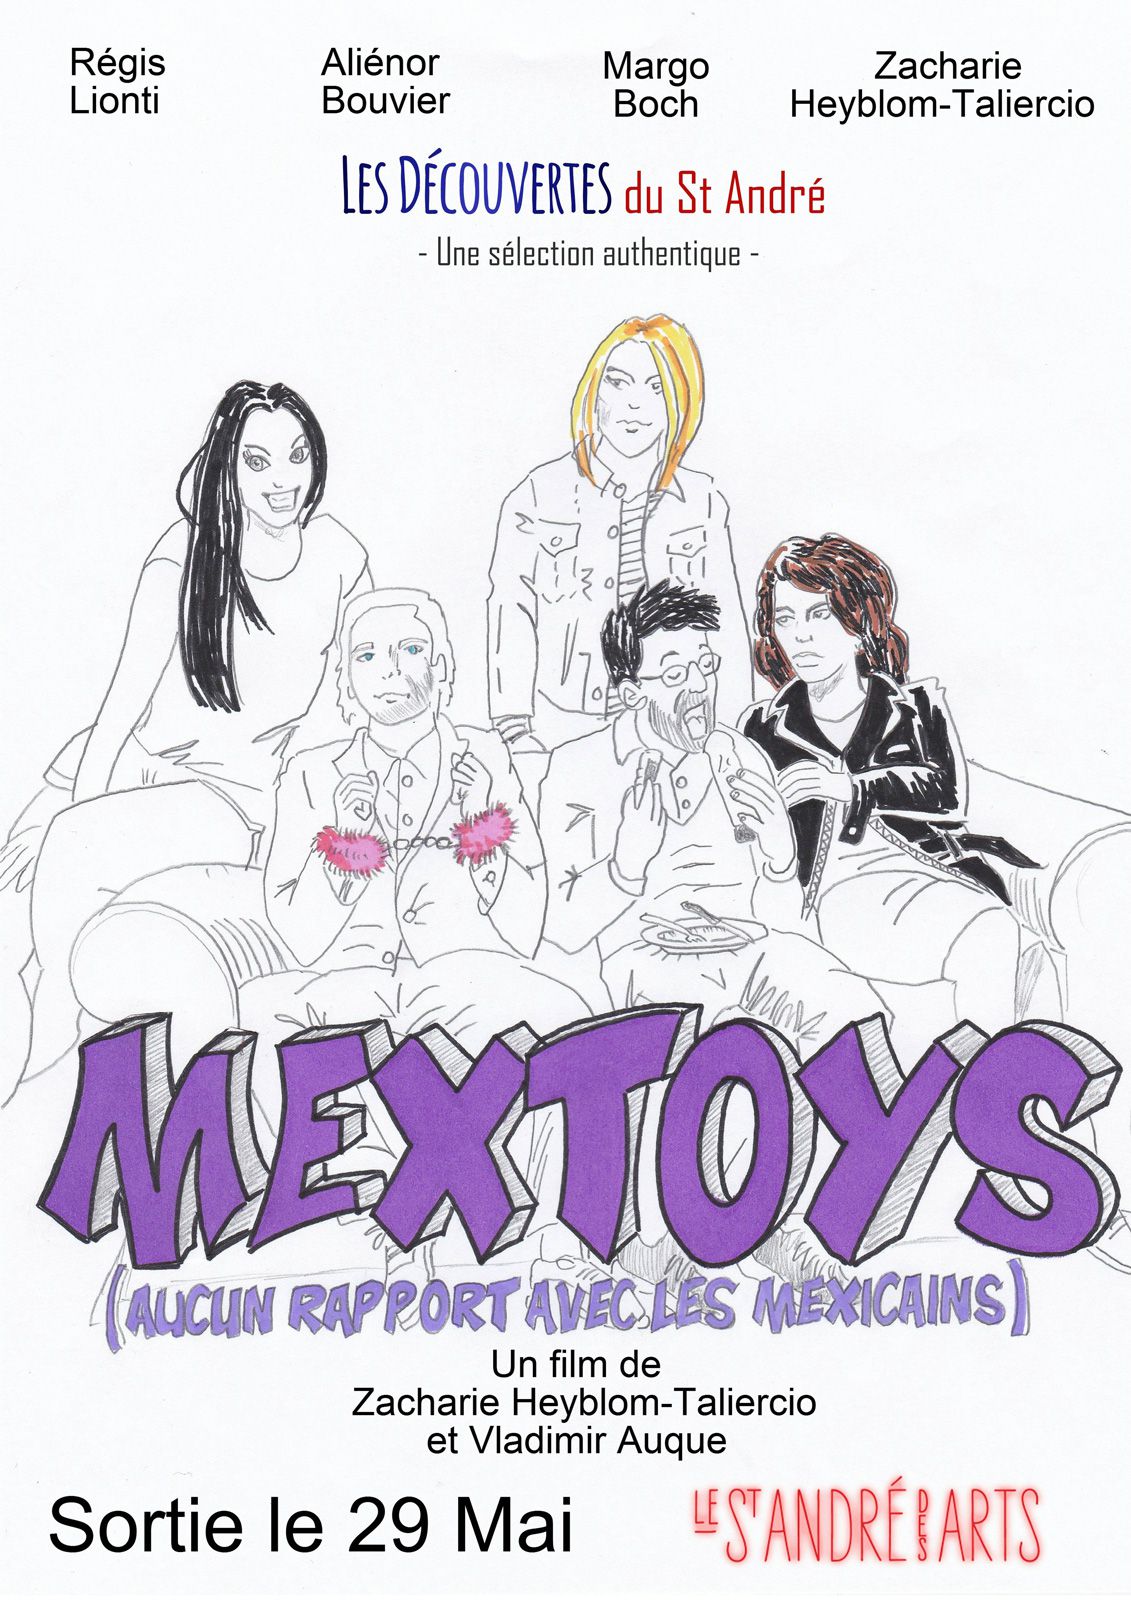 Mextoys (aucun rapport avec les Mexicains) - Film (2014)